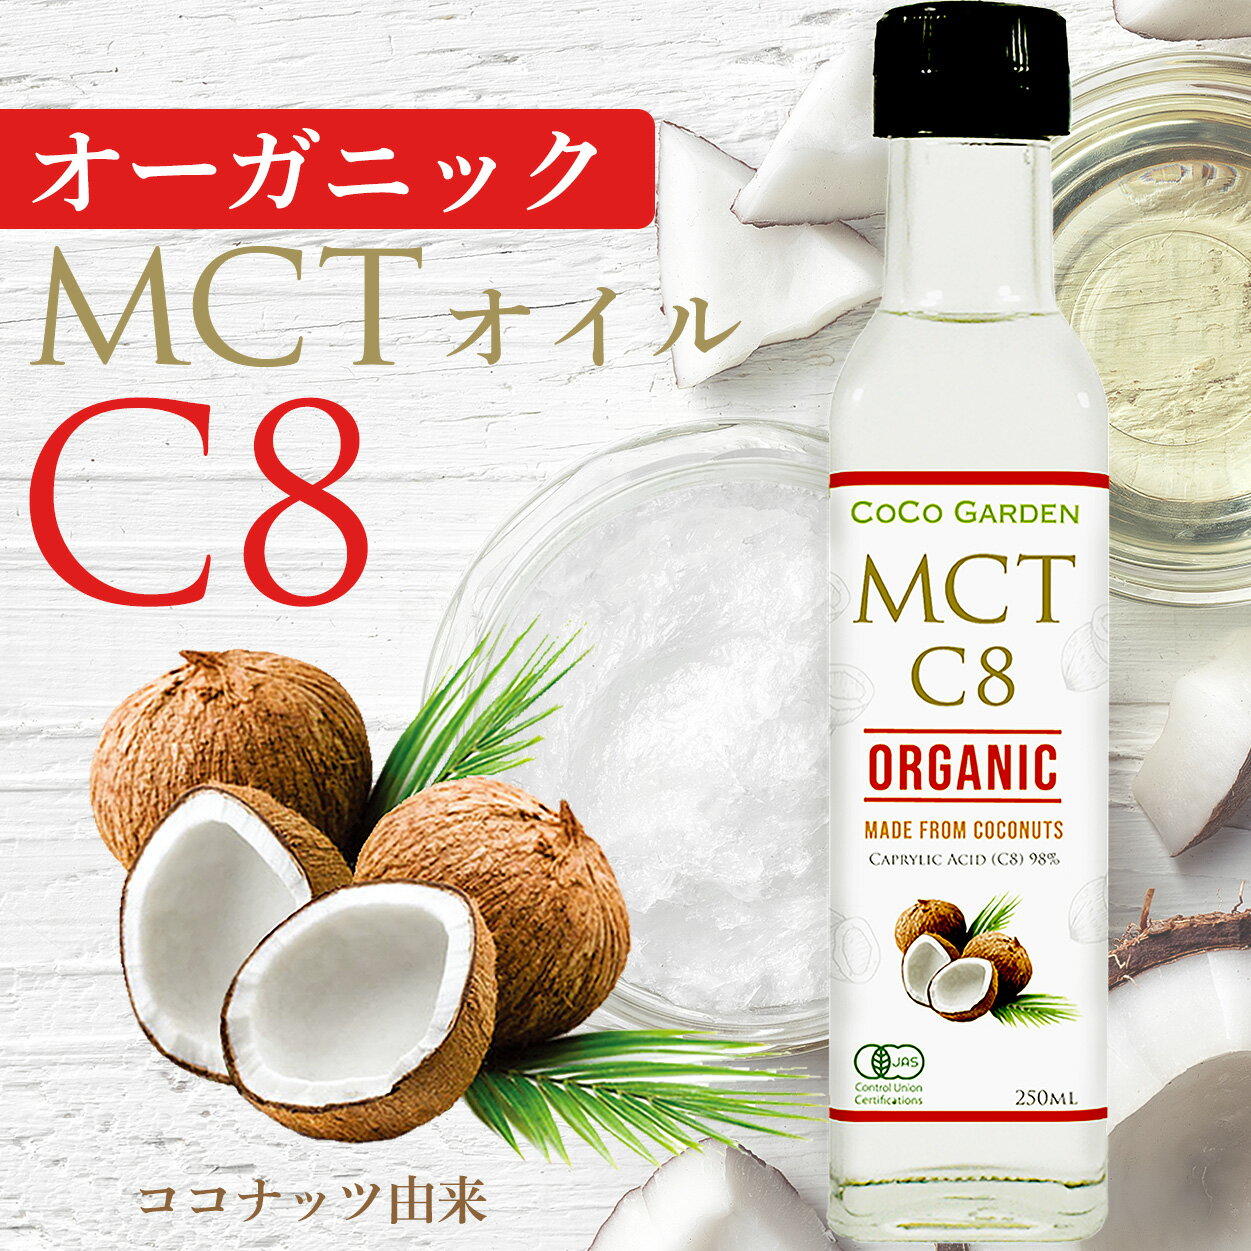 オーガニック MCTオイル C8 有機JAS認証 ココナッツオイル由来 250ml ココガーデン 中鎖脂肪酸100% C8 カプリル酸 98％ 無農薬 無添加 C8 に特化 (98%)したMCTオイル 炭水化物 の置換え ロカボ ダイエット にもおすすめ